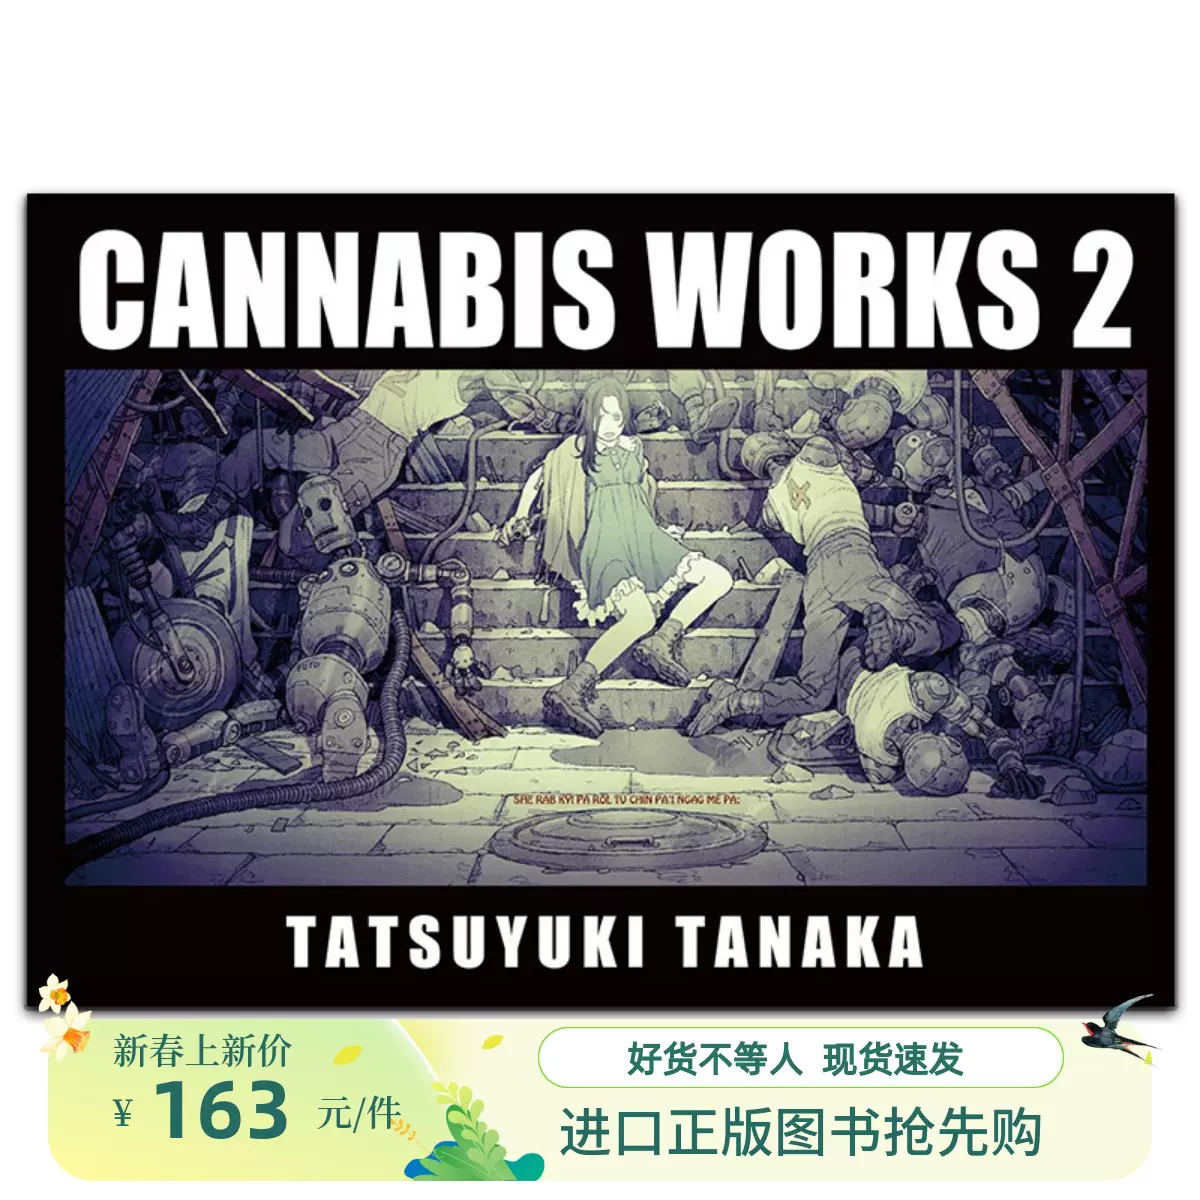 预-售CANNABIS WORKS 2 田中達之动漫家兼插画师视觉概念艺术集-Taobao